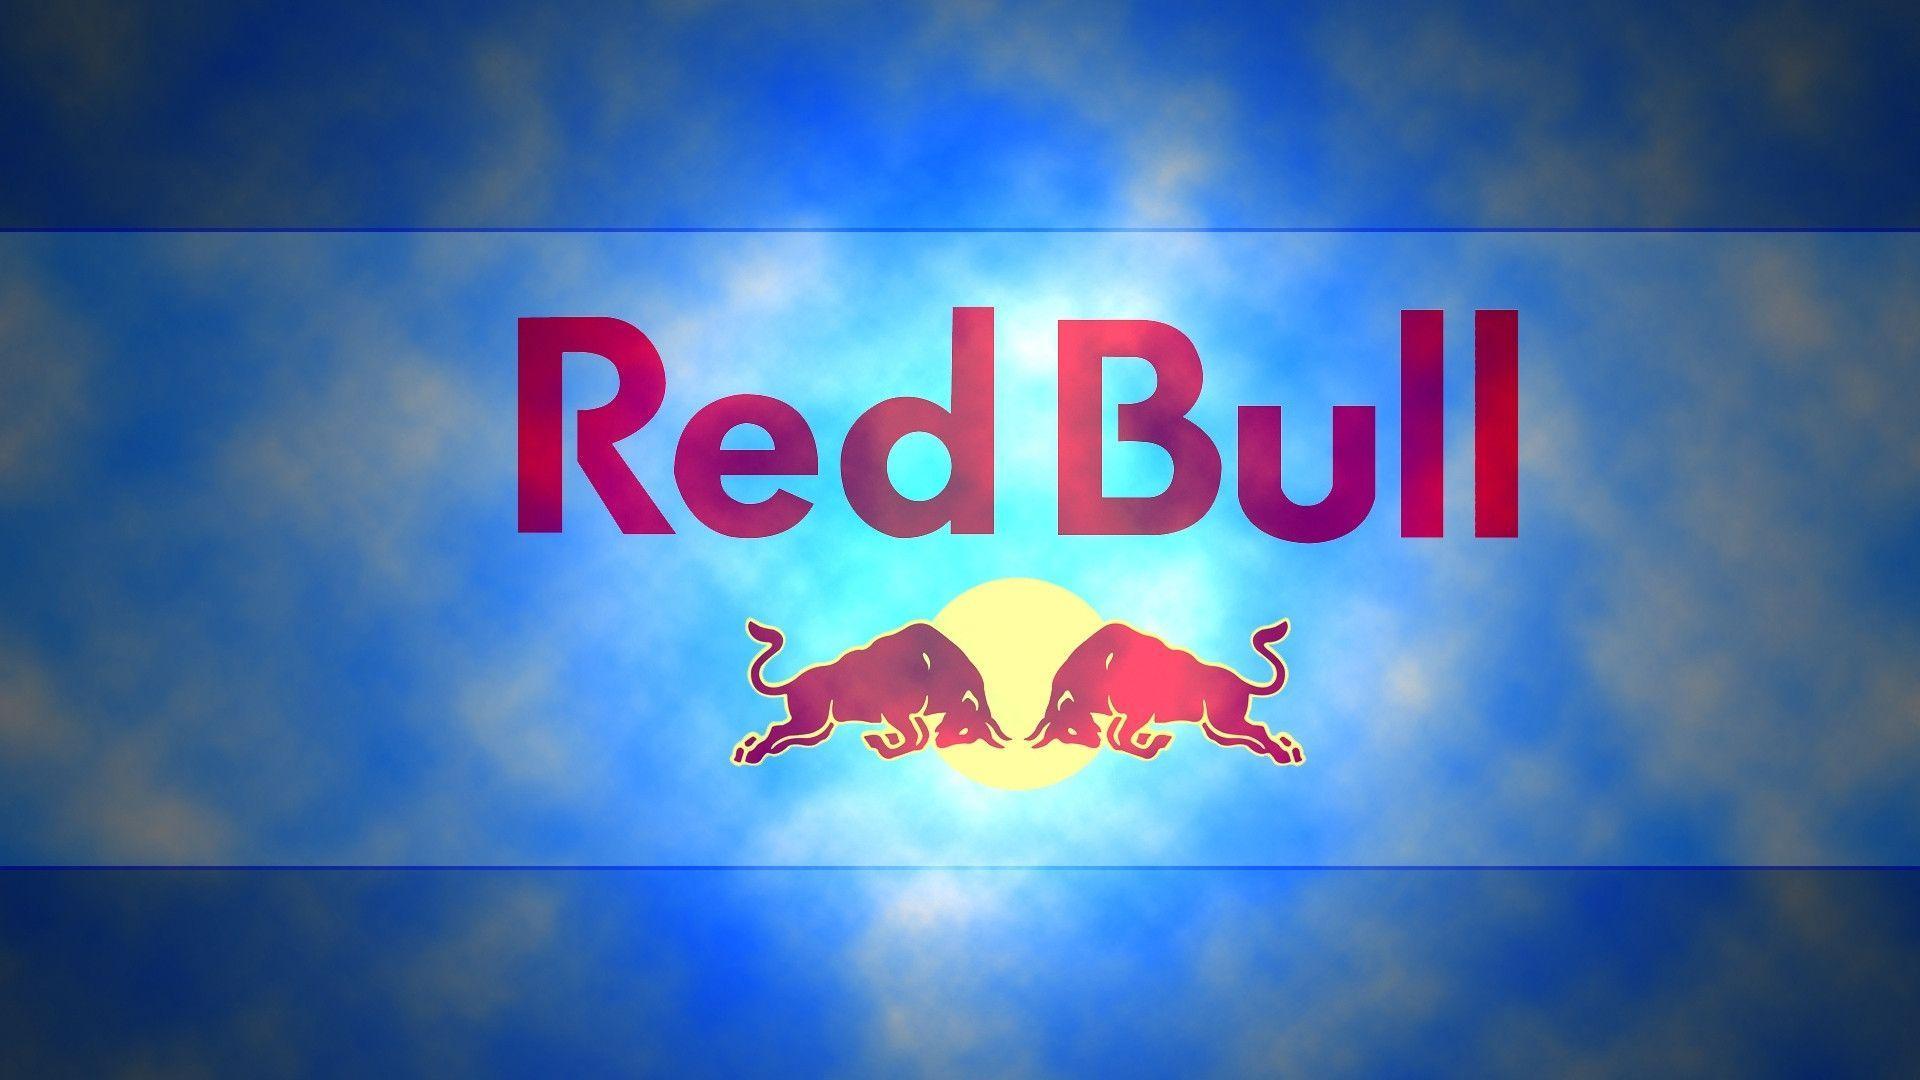 HD Red Bull Logo Wallpaper / Wallpaper Database